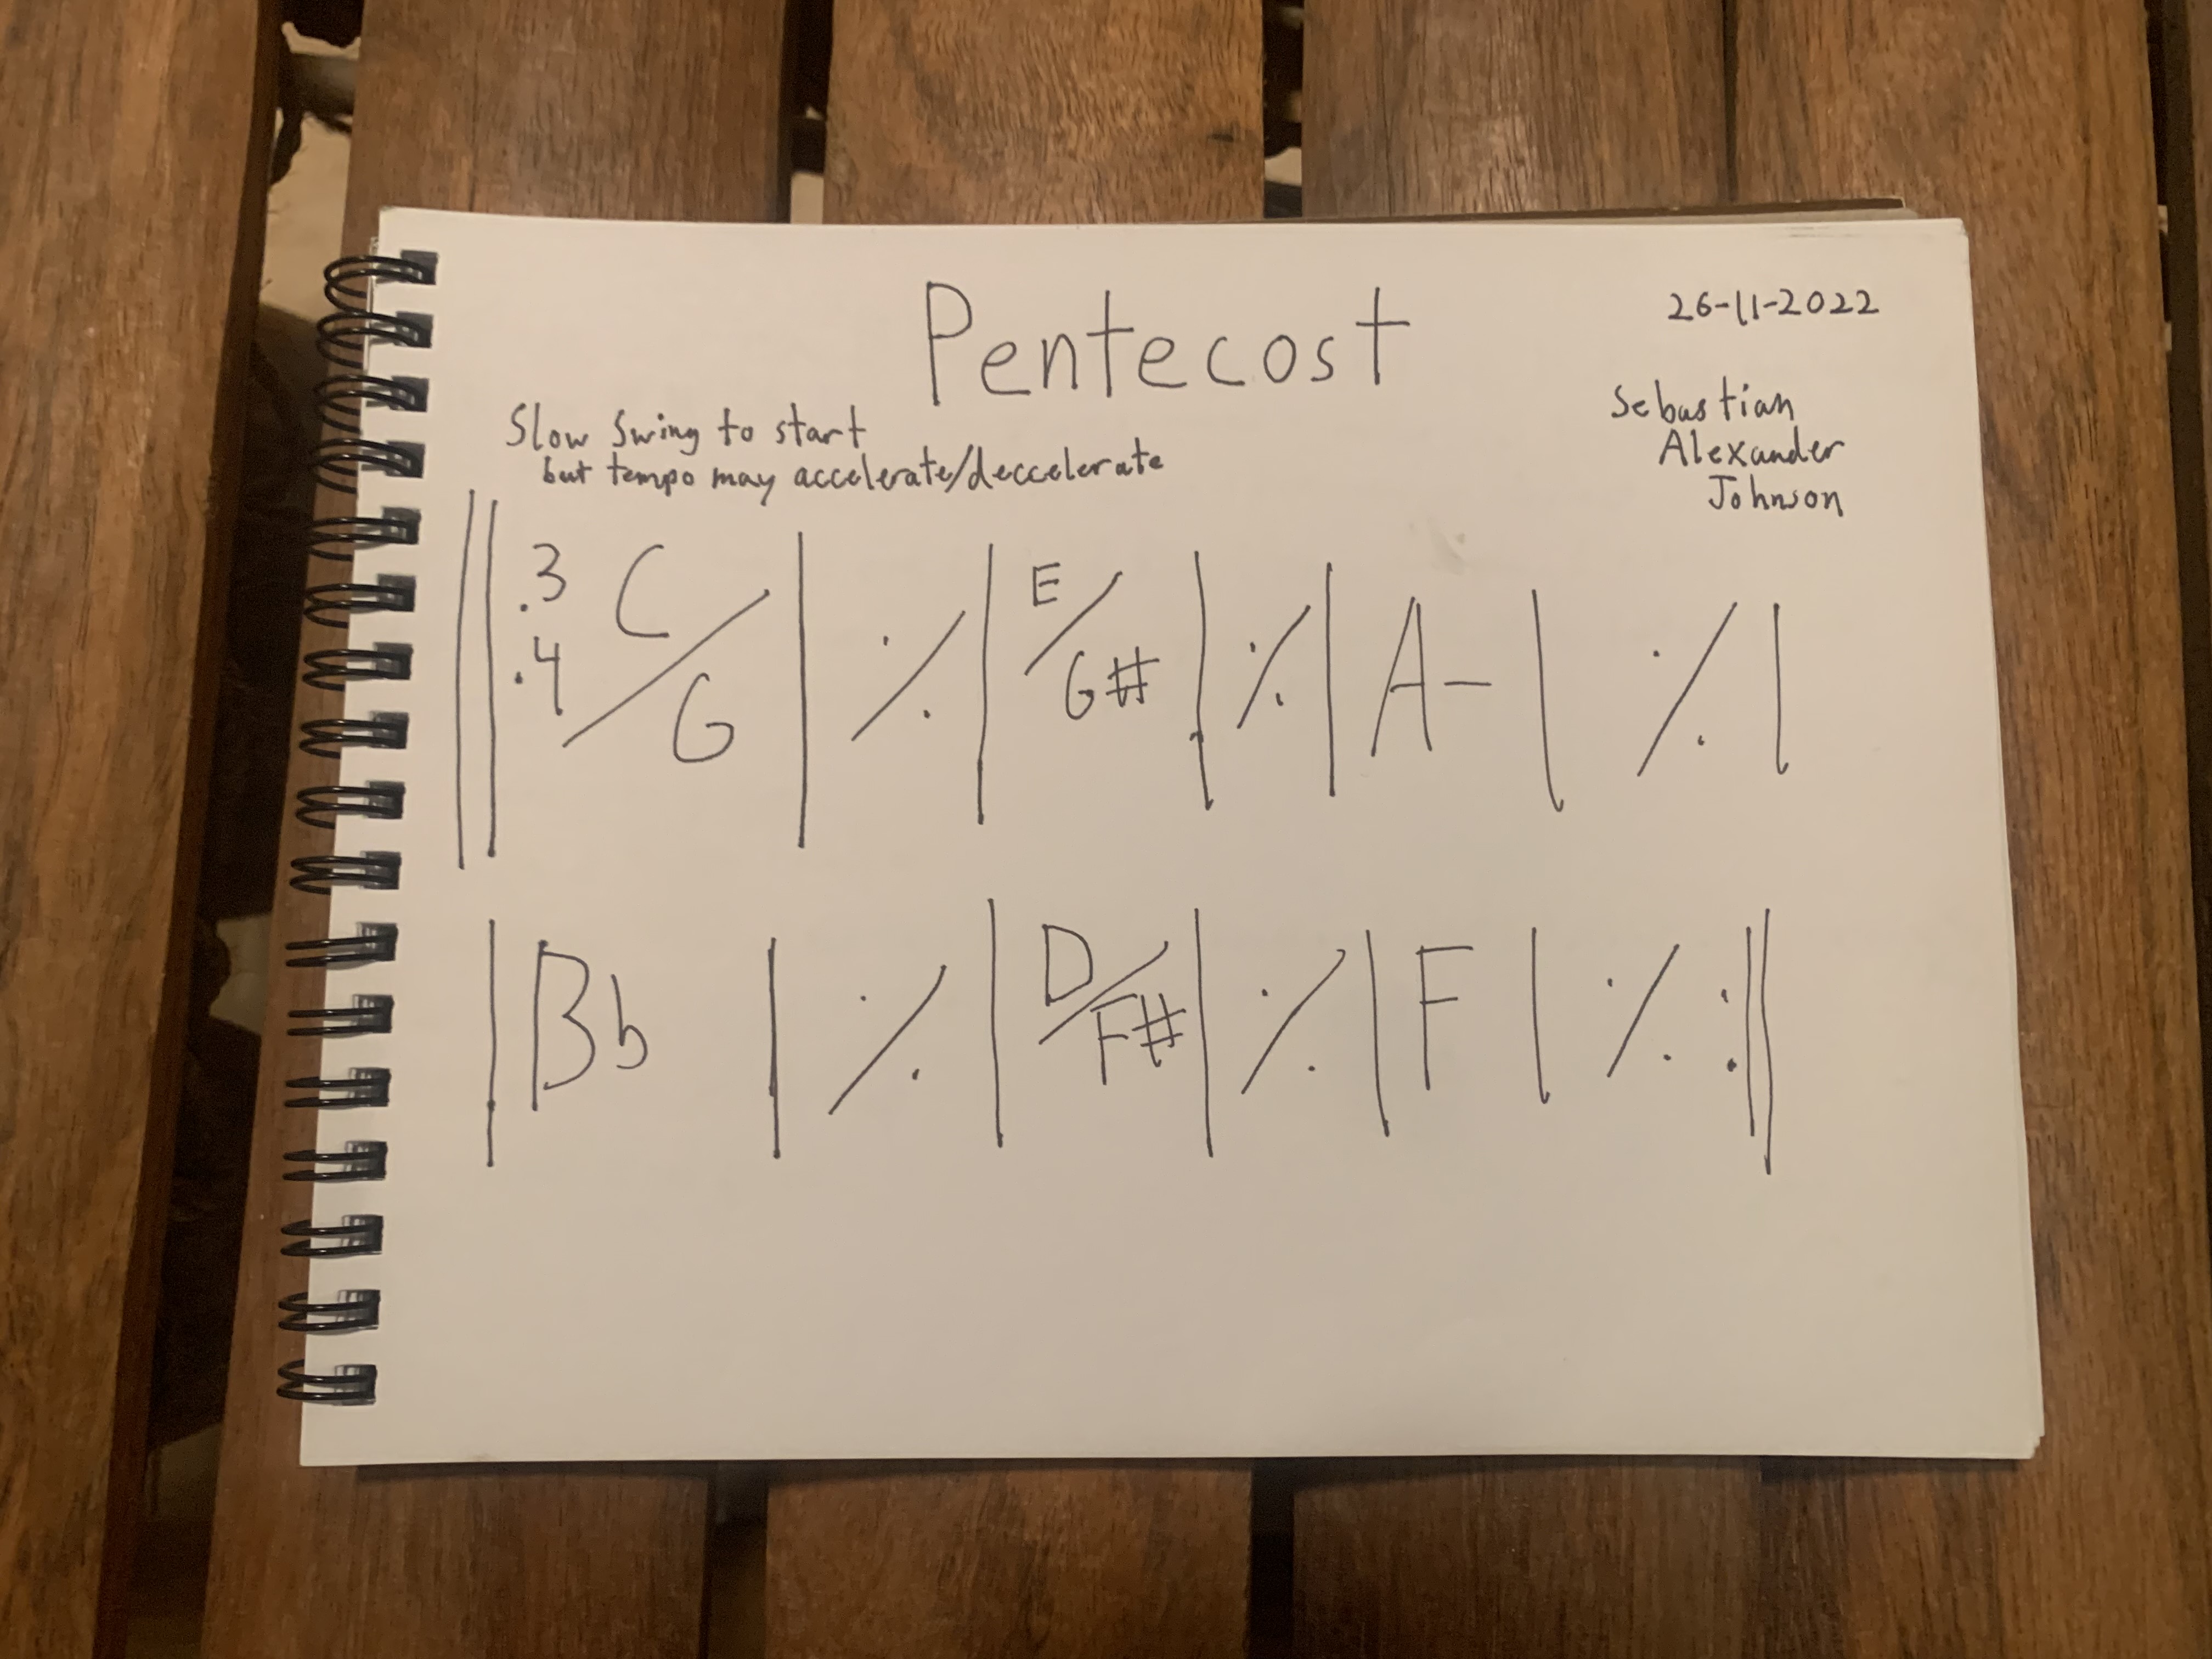 Pentecost Sheet Music